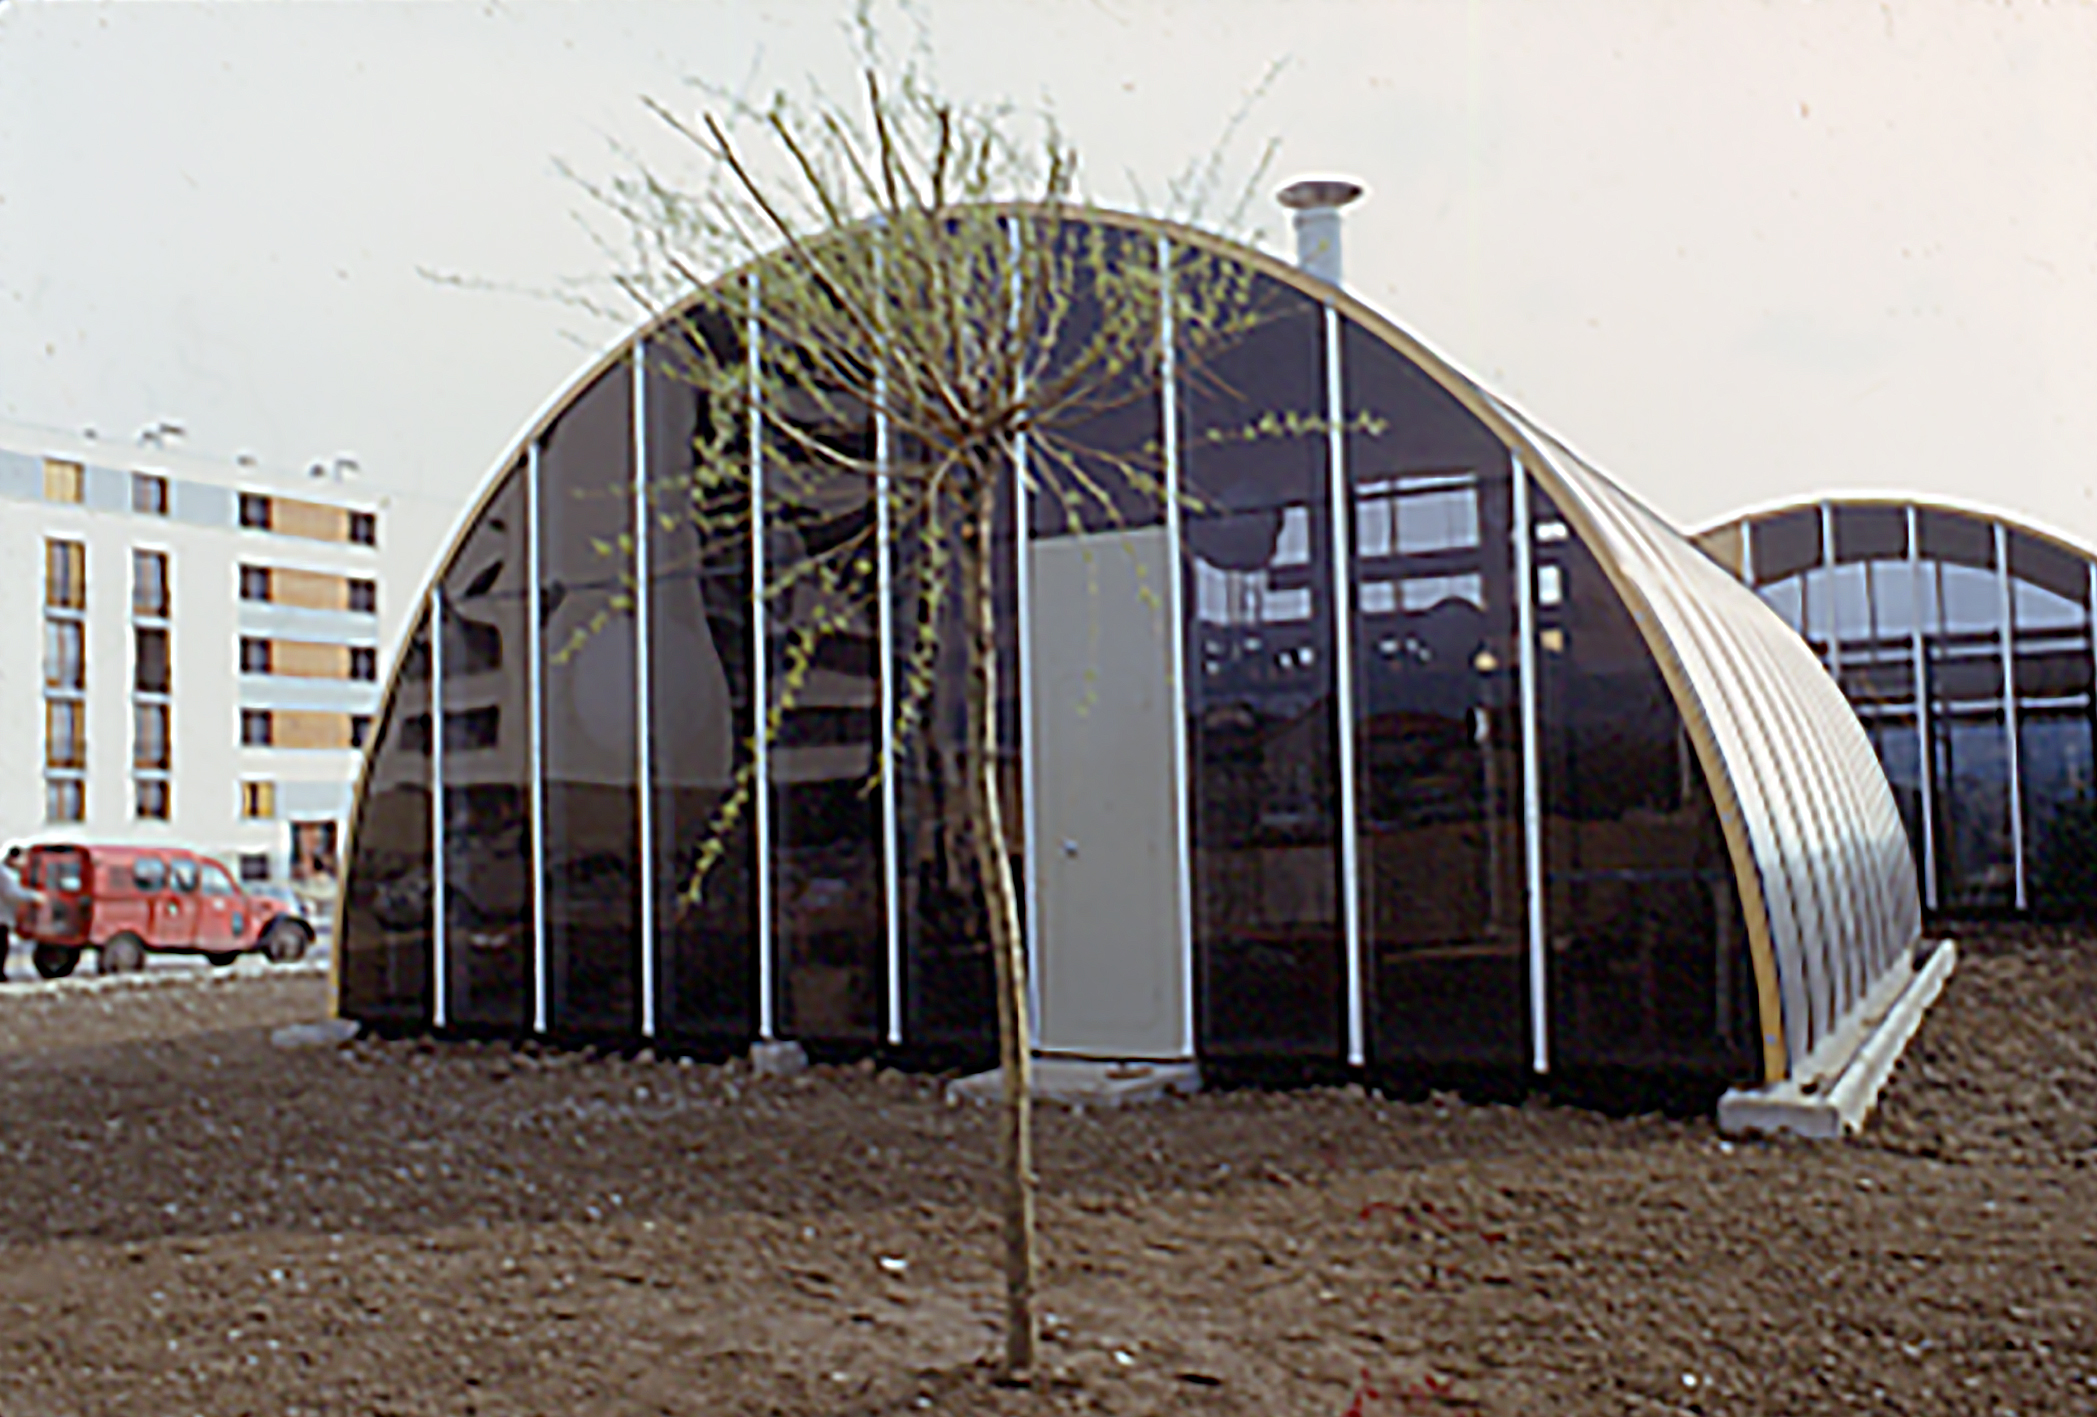 Club des Espérances, Ermont, 1967 (CIMT-Jean Prouvé), club de jeunes.